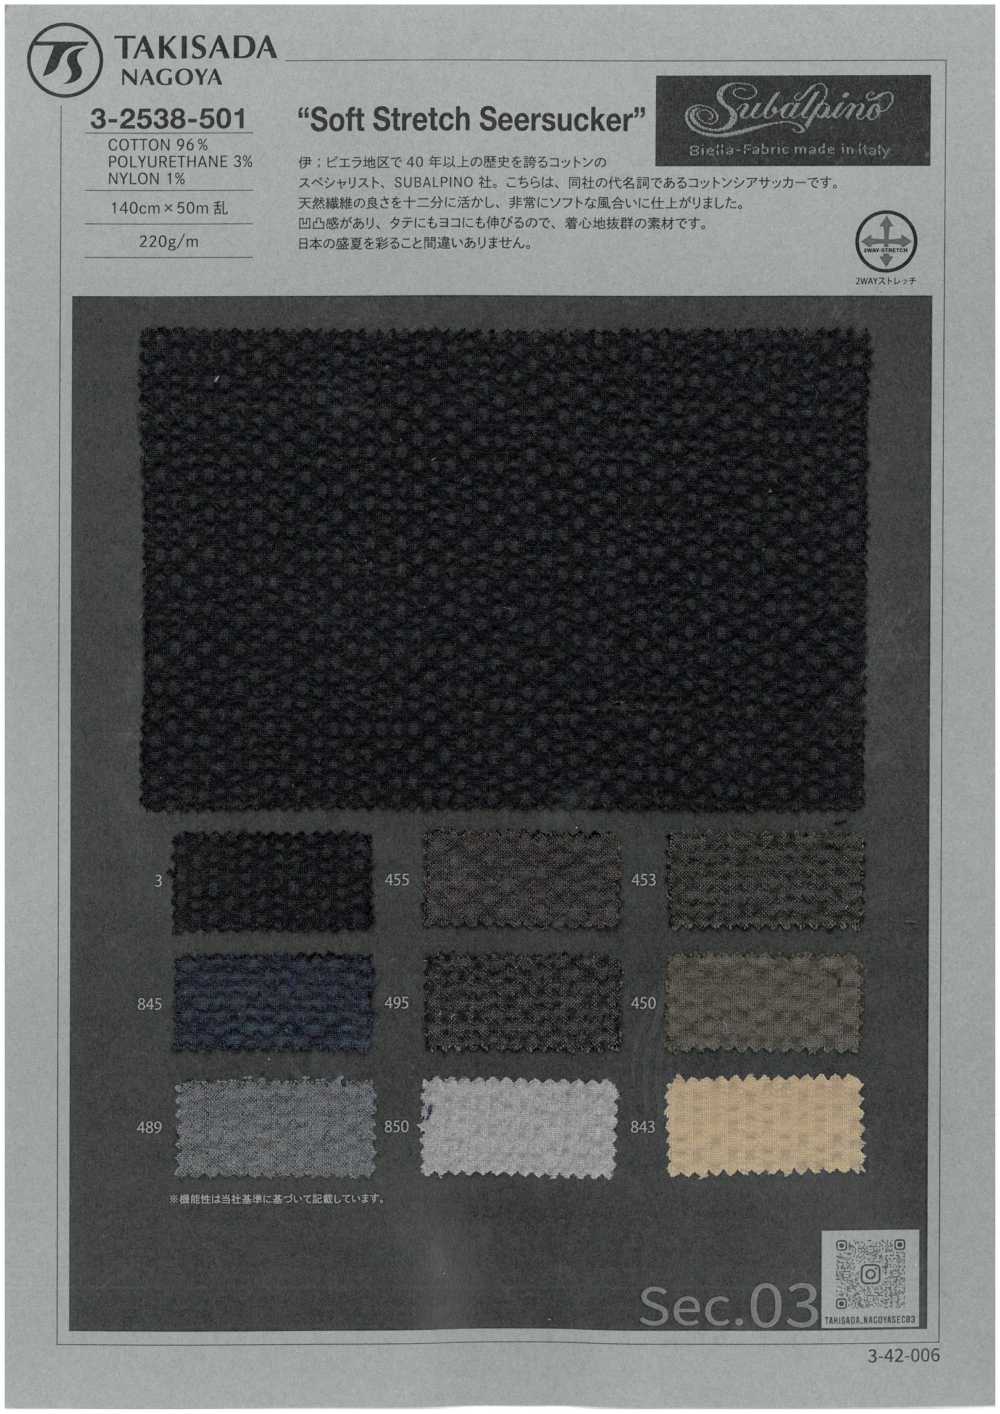 3-2538-501 SUBALPINO Weicher Stretch-Seersucker Ohne Muster[Textilgewebe] Takisada Nagoya